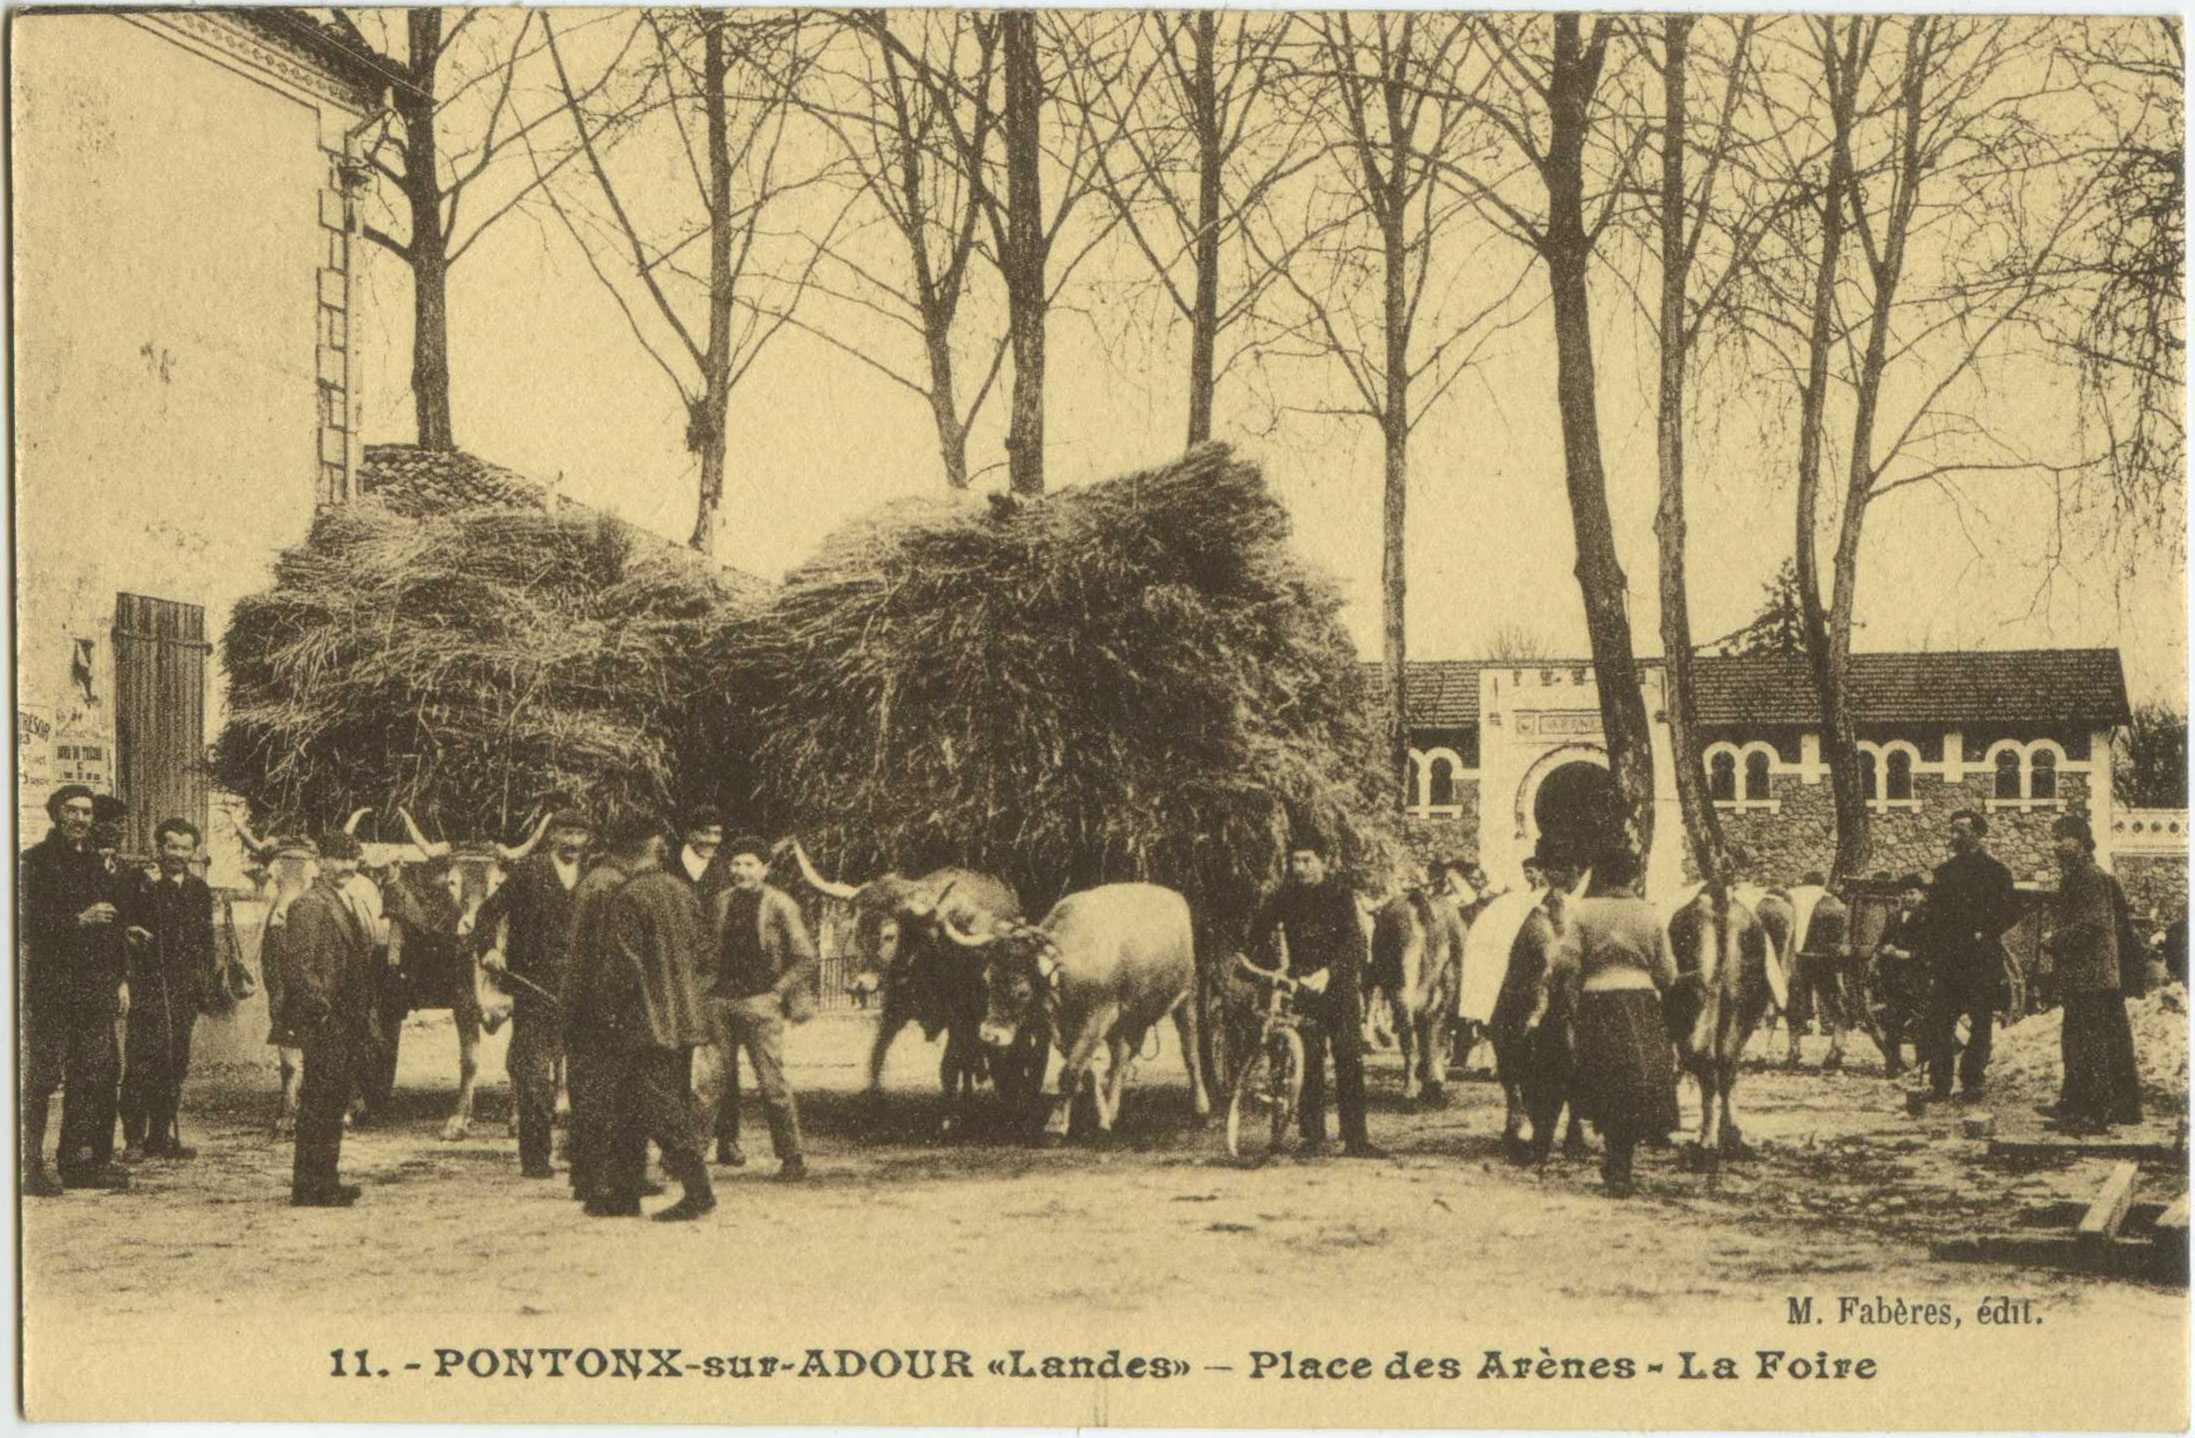 Pontonx-sur-l'Adour - Place des Arènes - La Foire